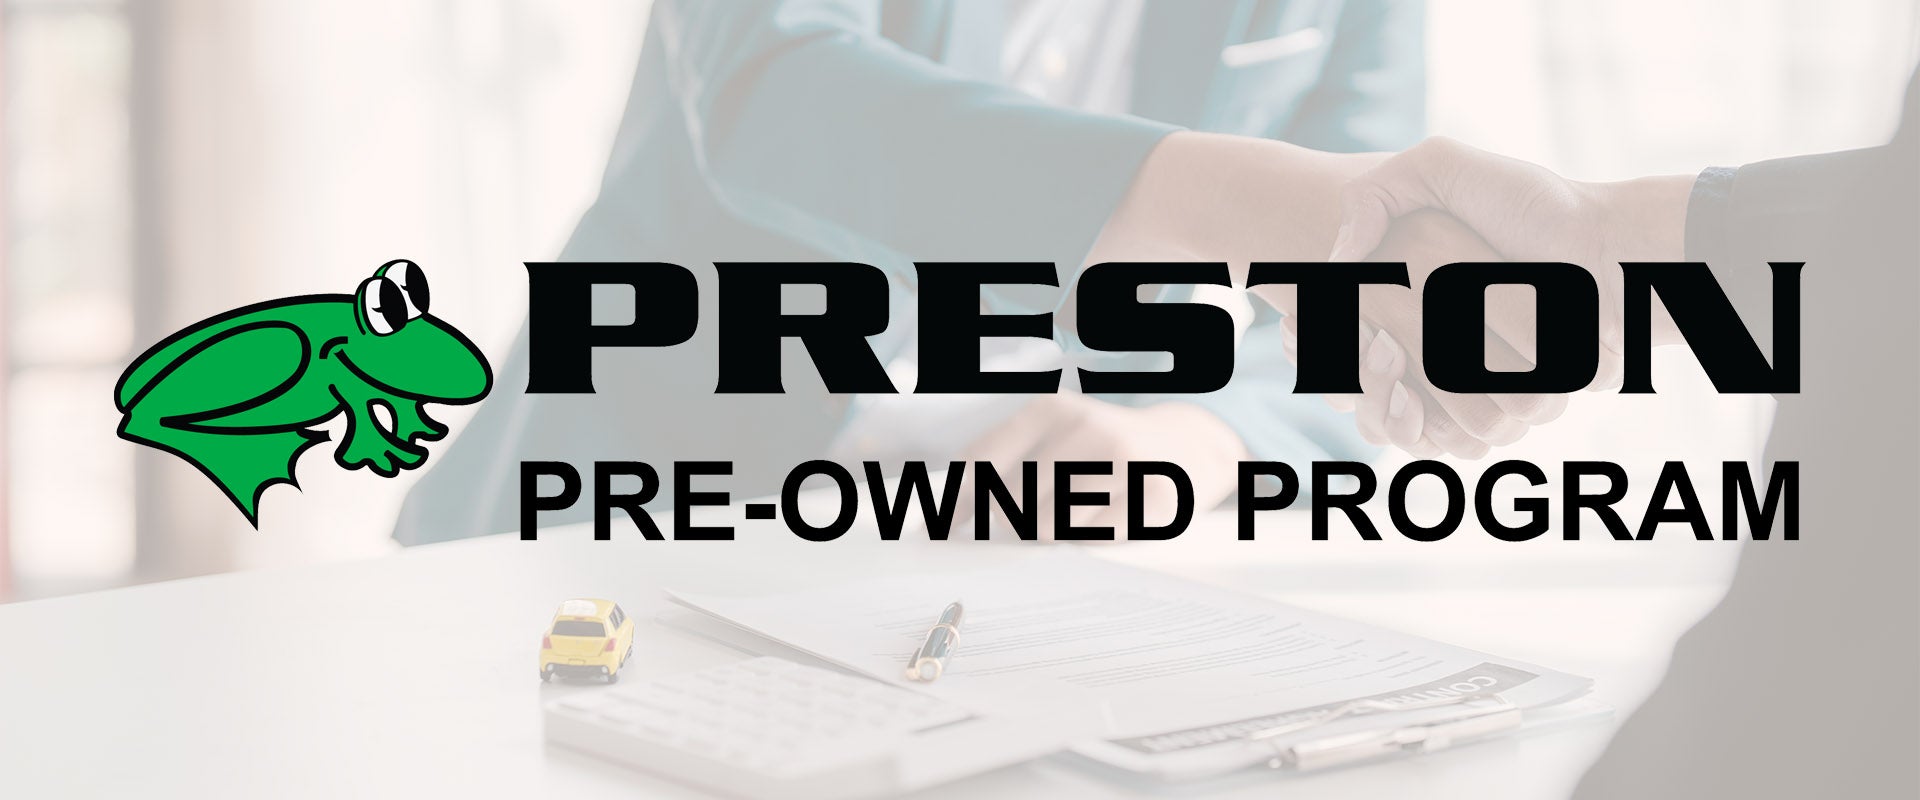 Preston Pre-Owned Program